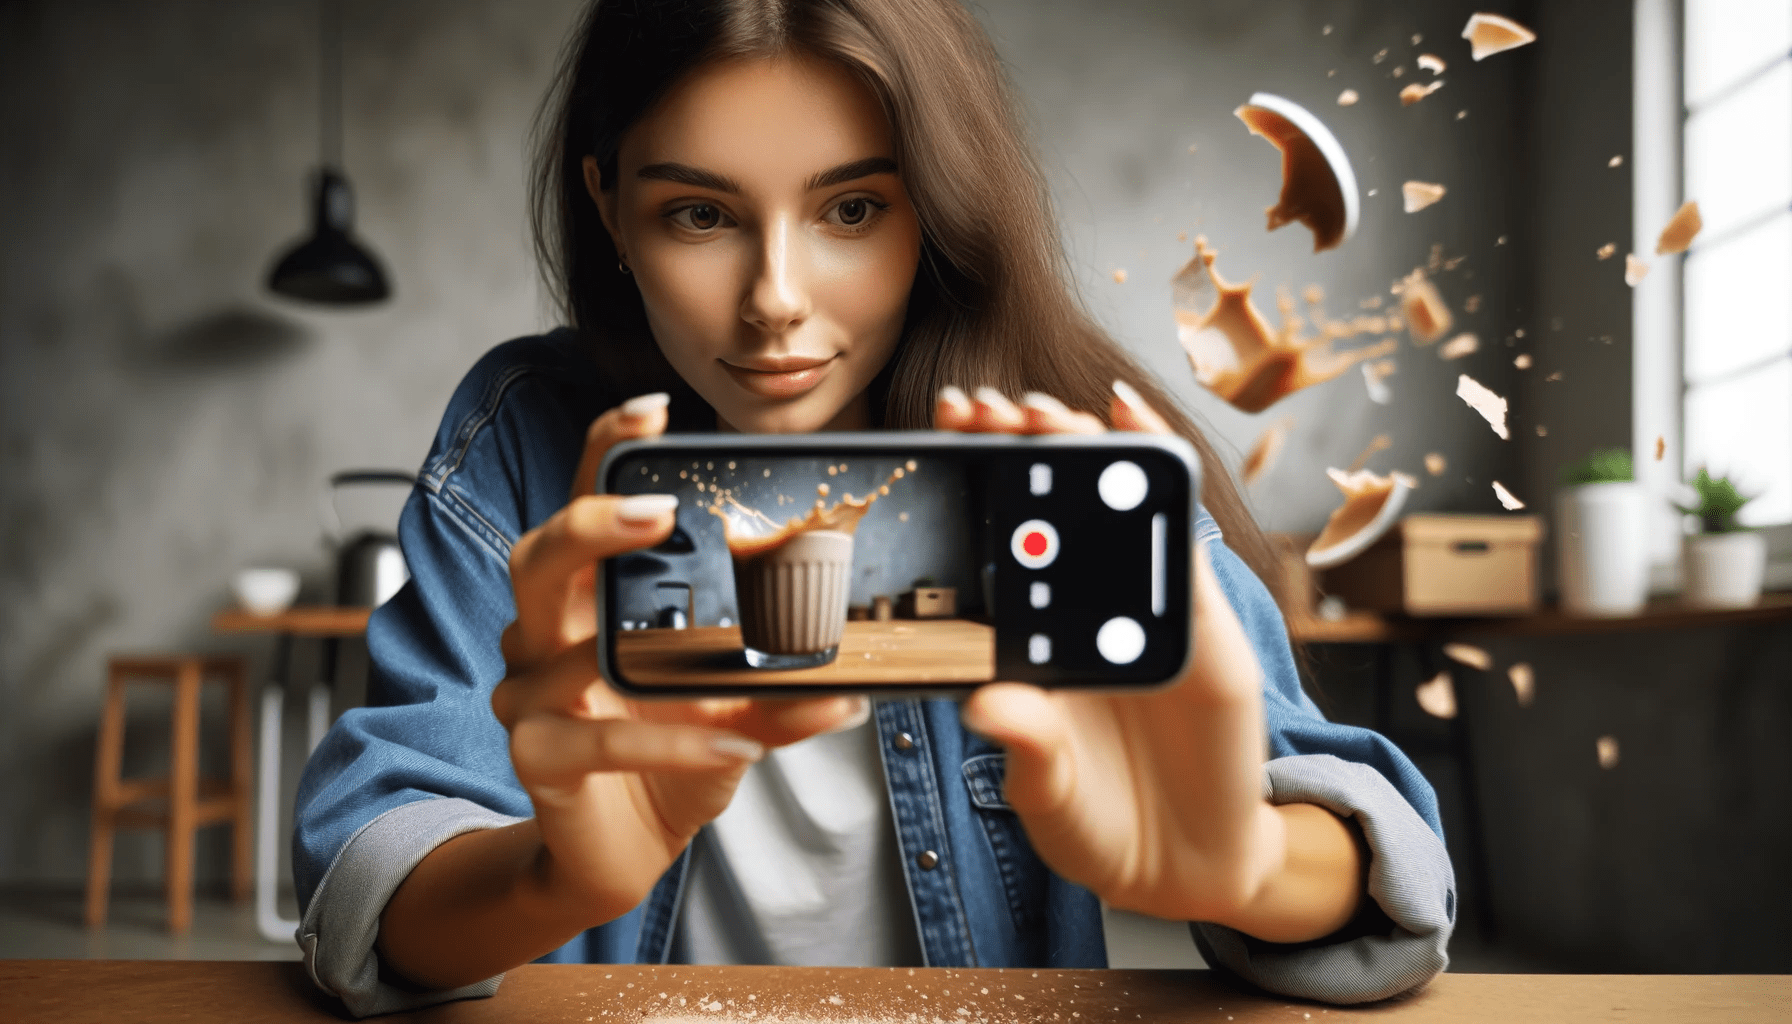 SloMo Slow Motion iPhone Smartphone FiLMiC Pro Video Premiere Pro Kaffee Tasse Destroying Things DIY Low Budget. Fotografieren und Filmen mit dem Smartphone: Bessere Fotos und Videos mit dem Handy für Freizeit, Hobby und Business